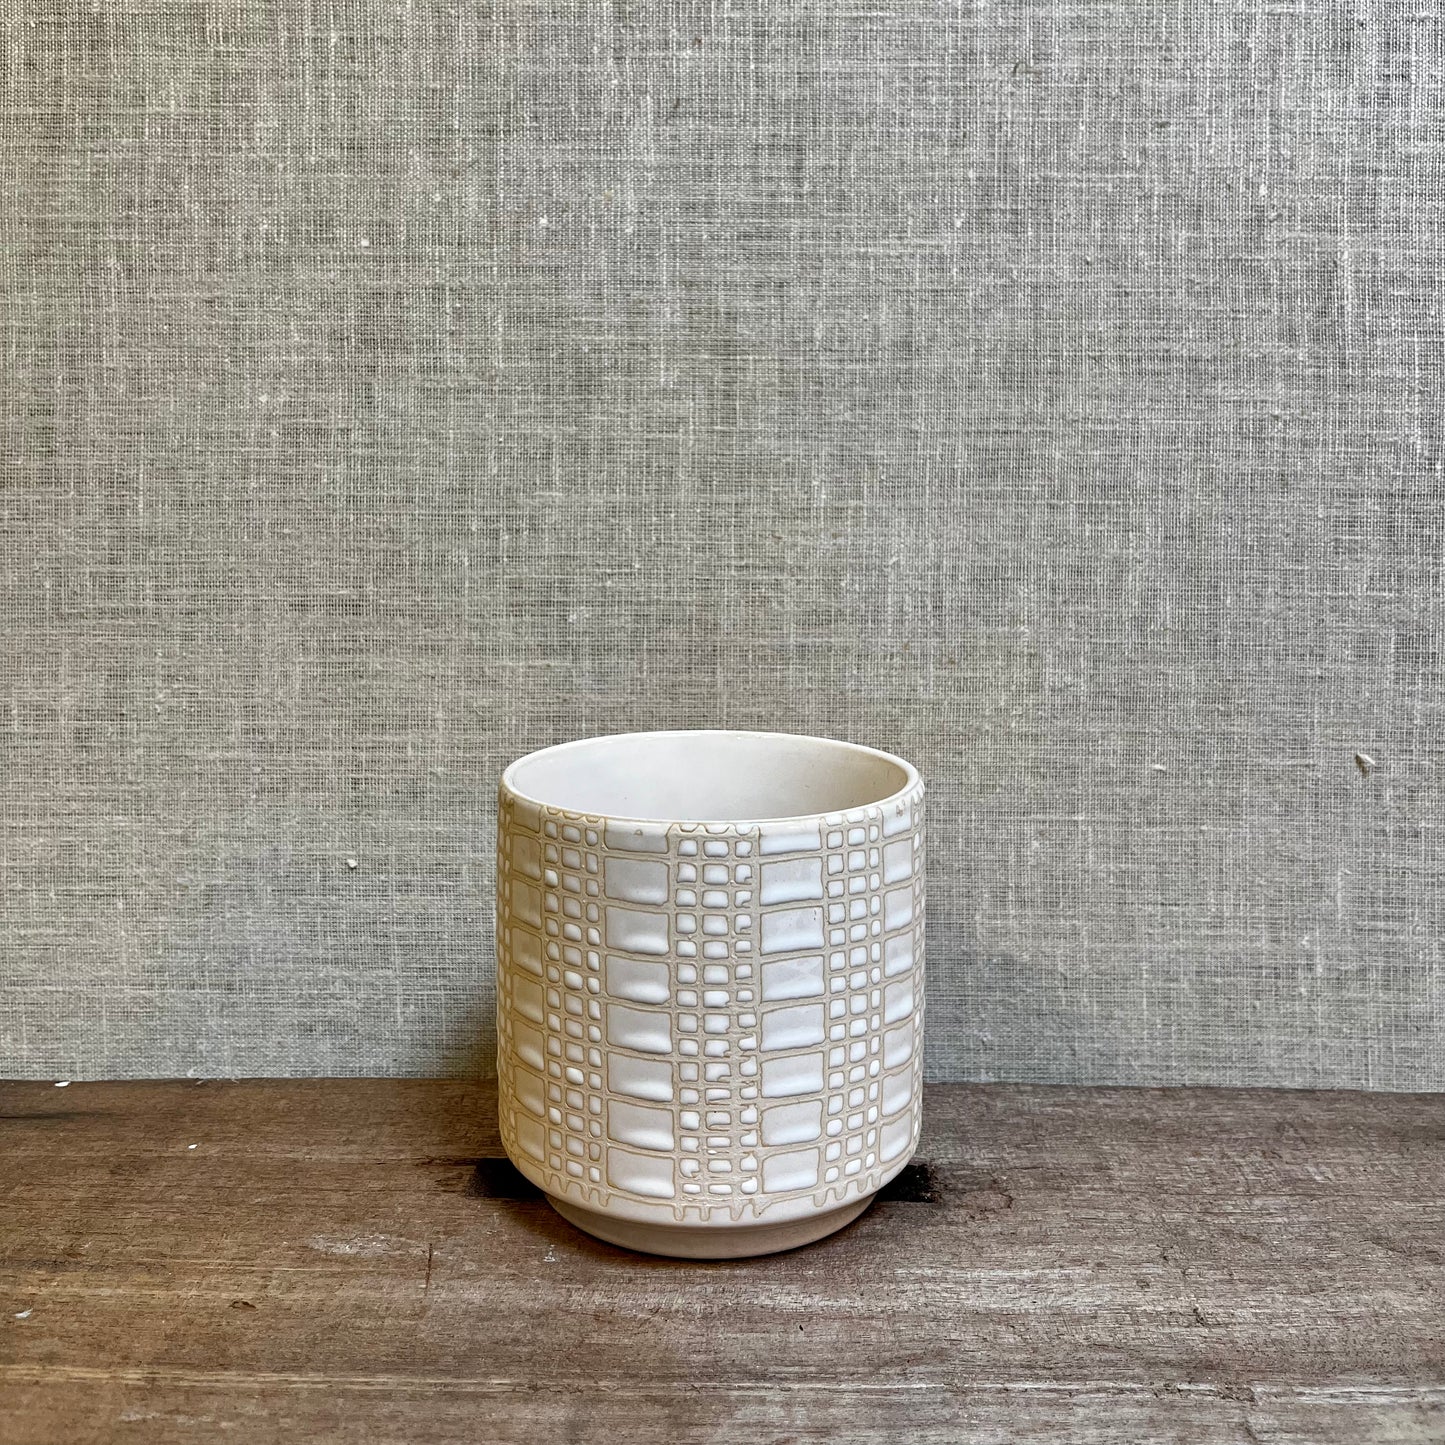 Ceramic Pot - White/Cream Cable Knit